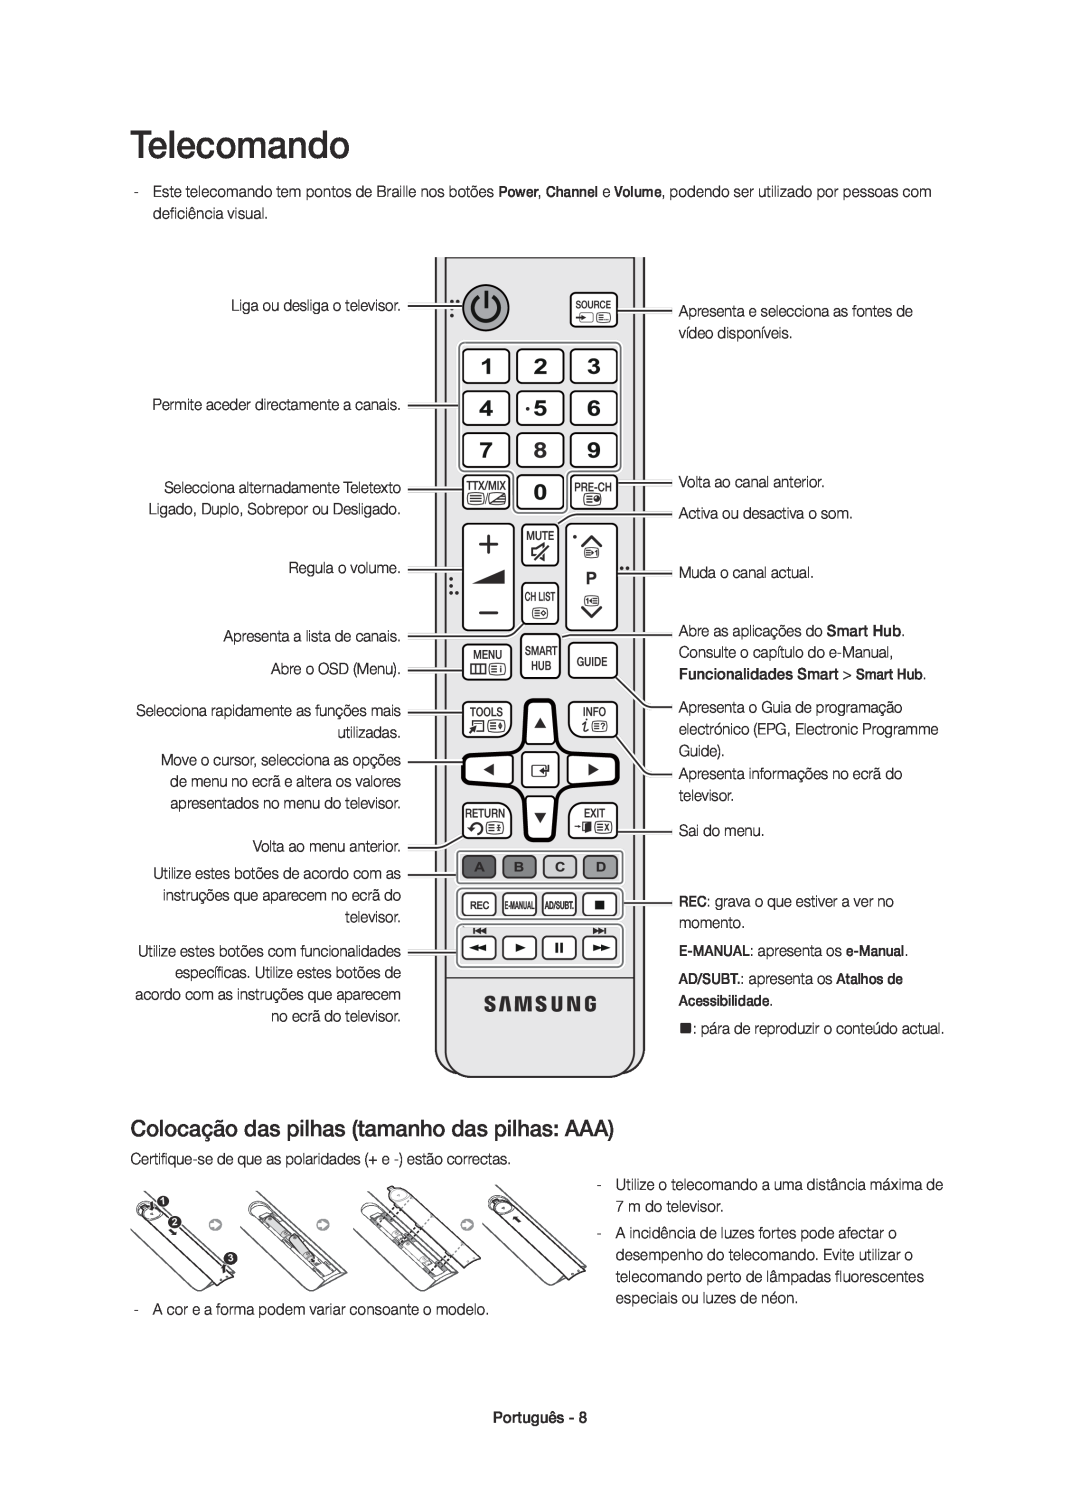 Samsung UE40H6400AWXXC, UE48H6400AWXXH, UE75H6400AWXXH manual Telecomando, Colocação das pilhas tamanho das pilhas AAA 